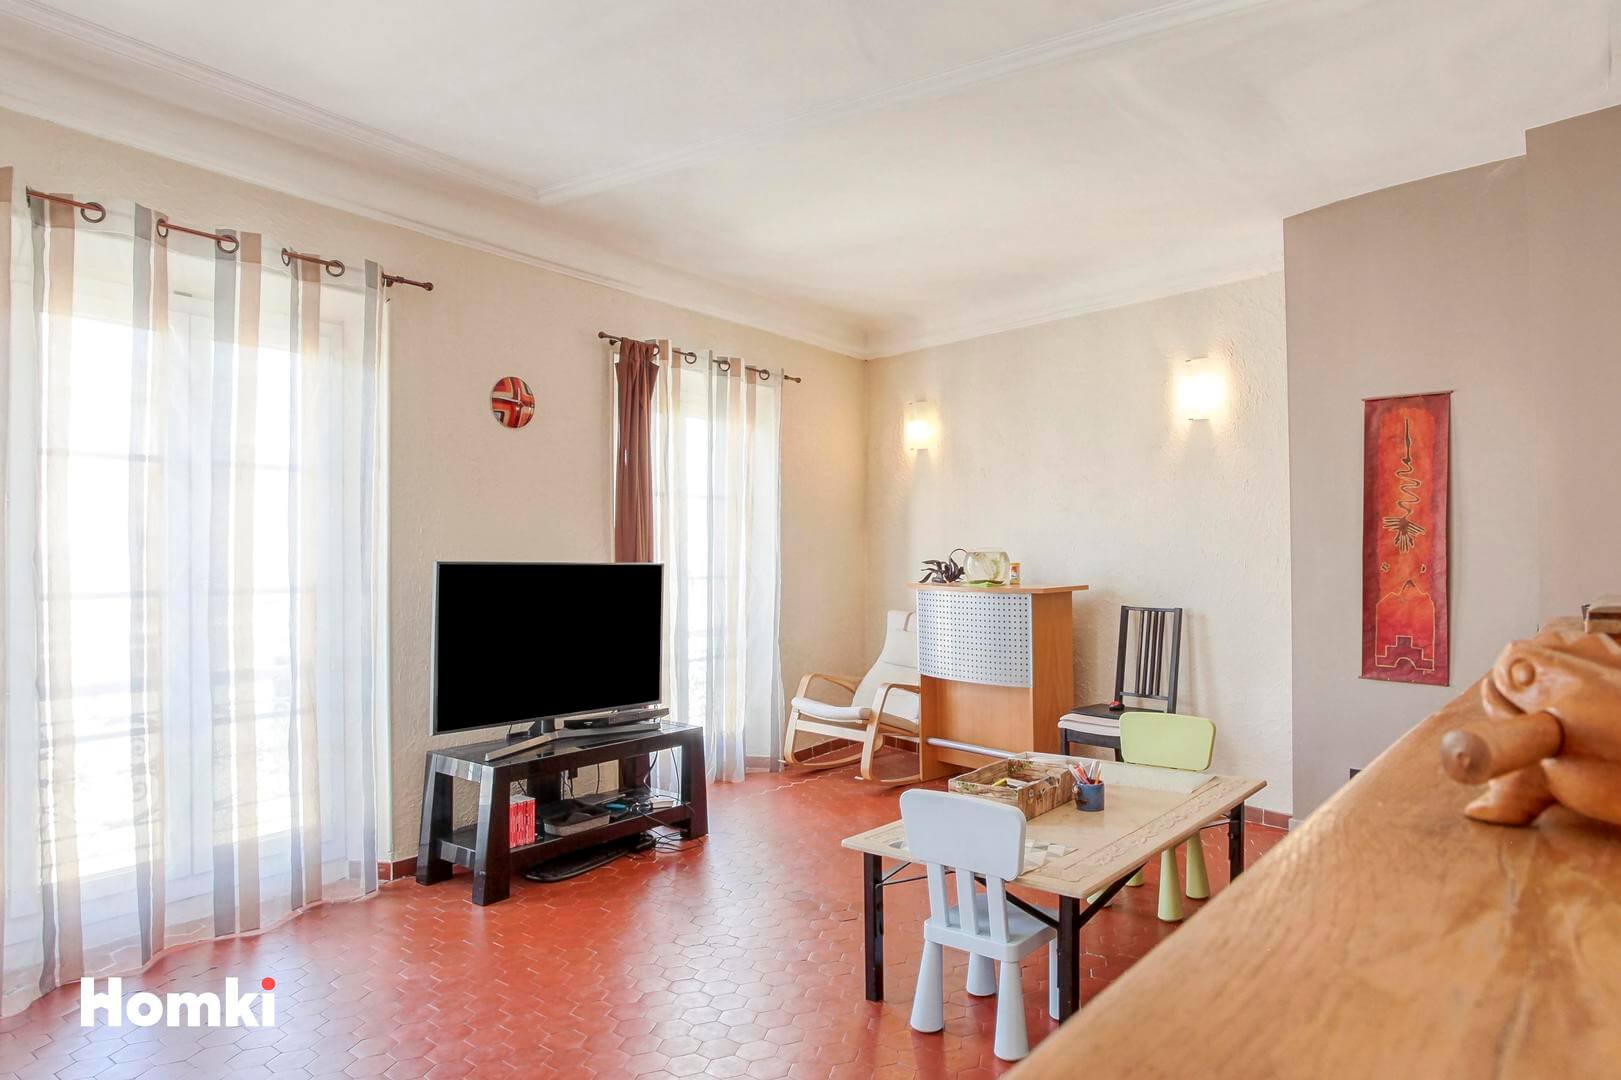 Homki - Vente Appartement  de 100.0 m² à Roquevaire 13360